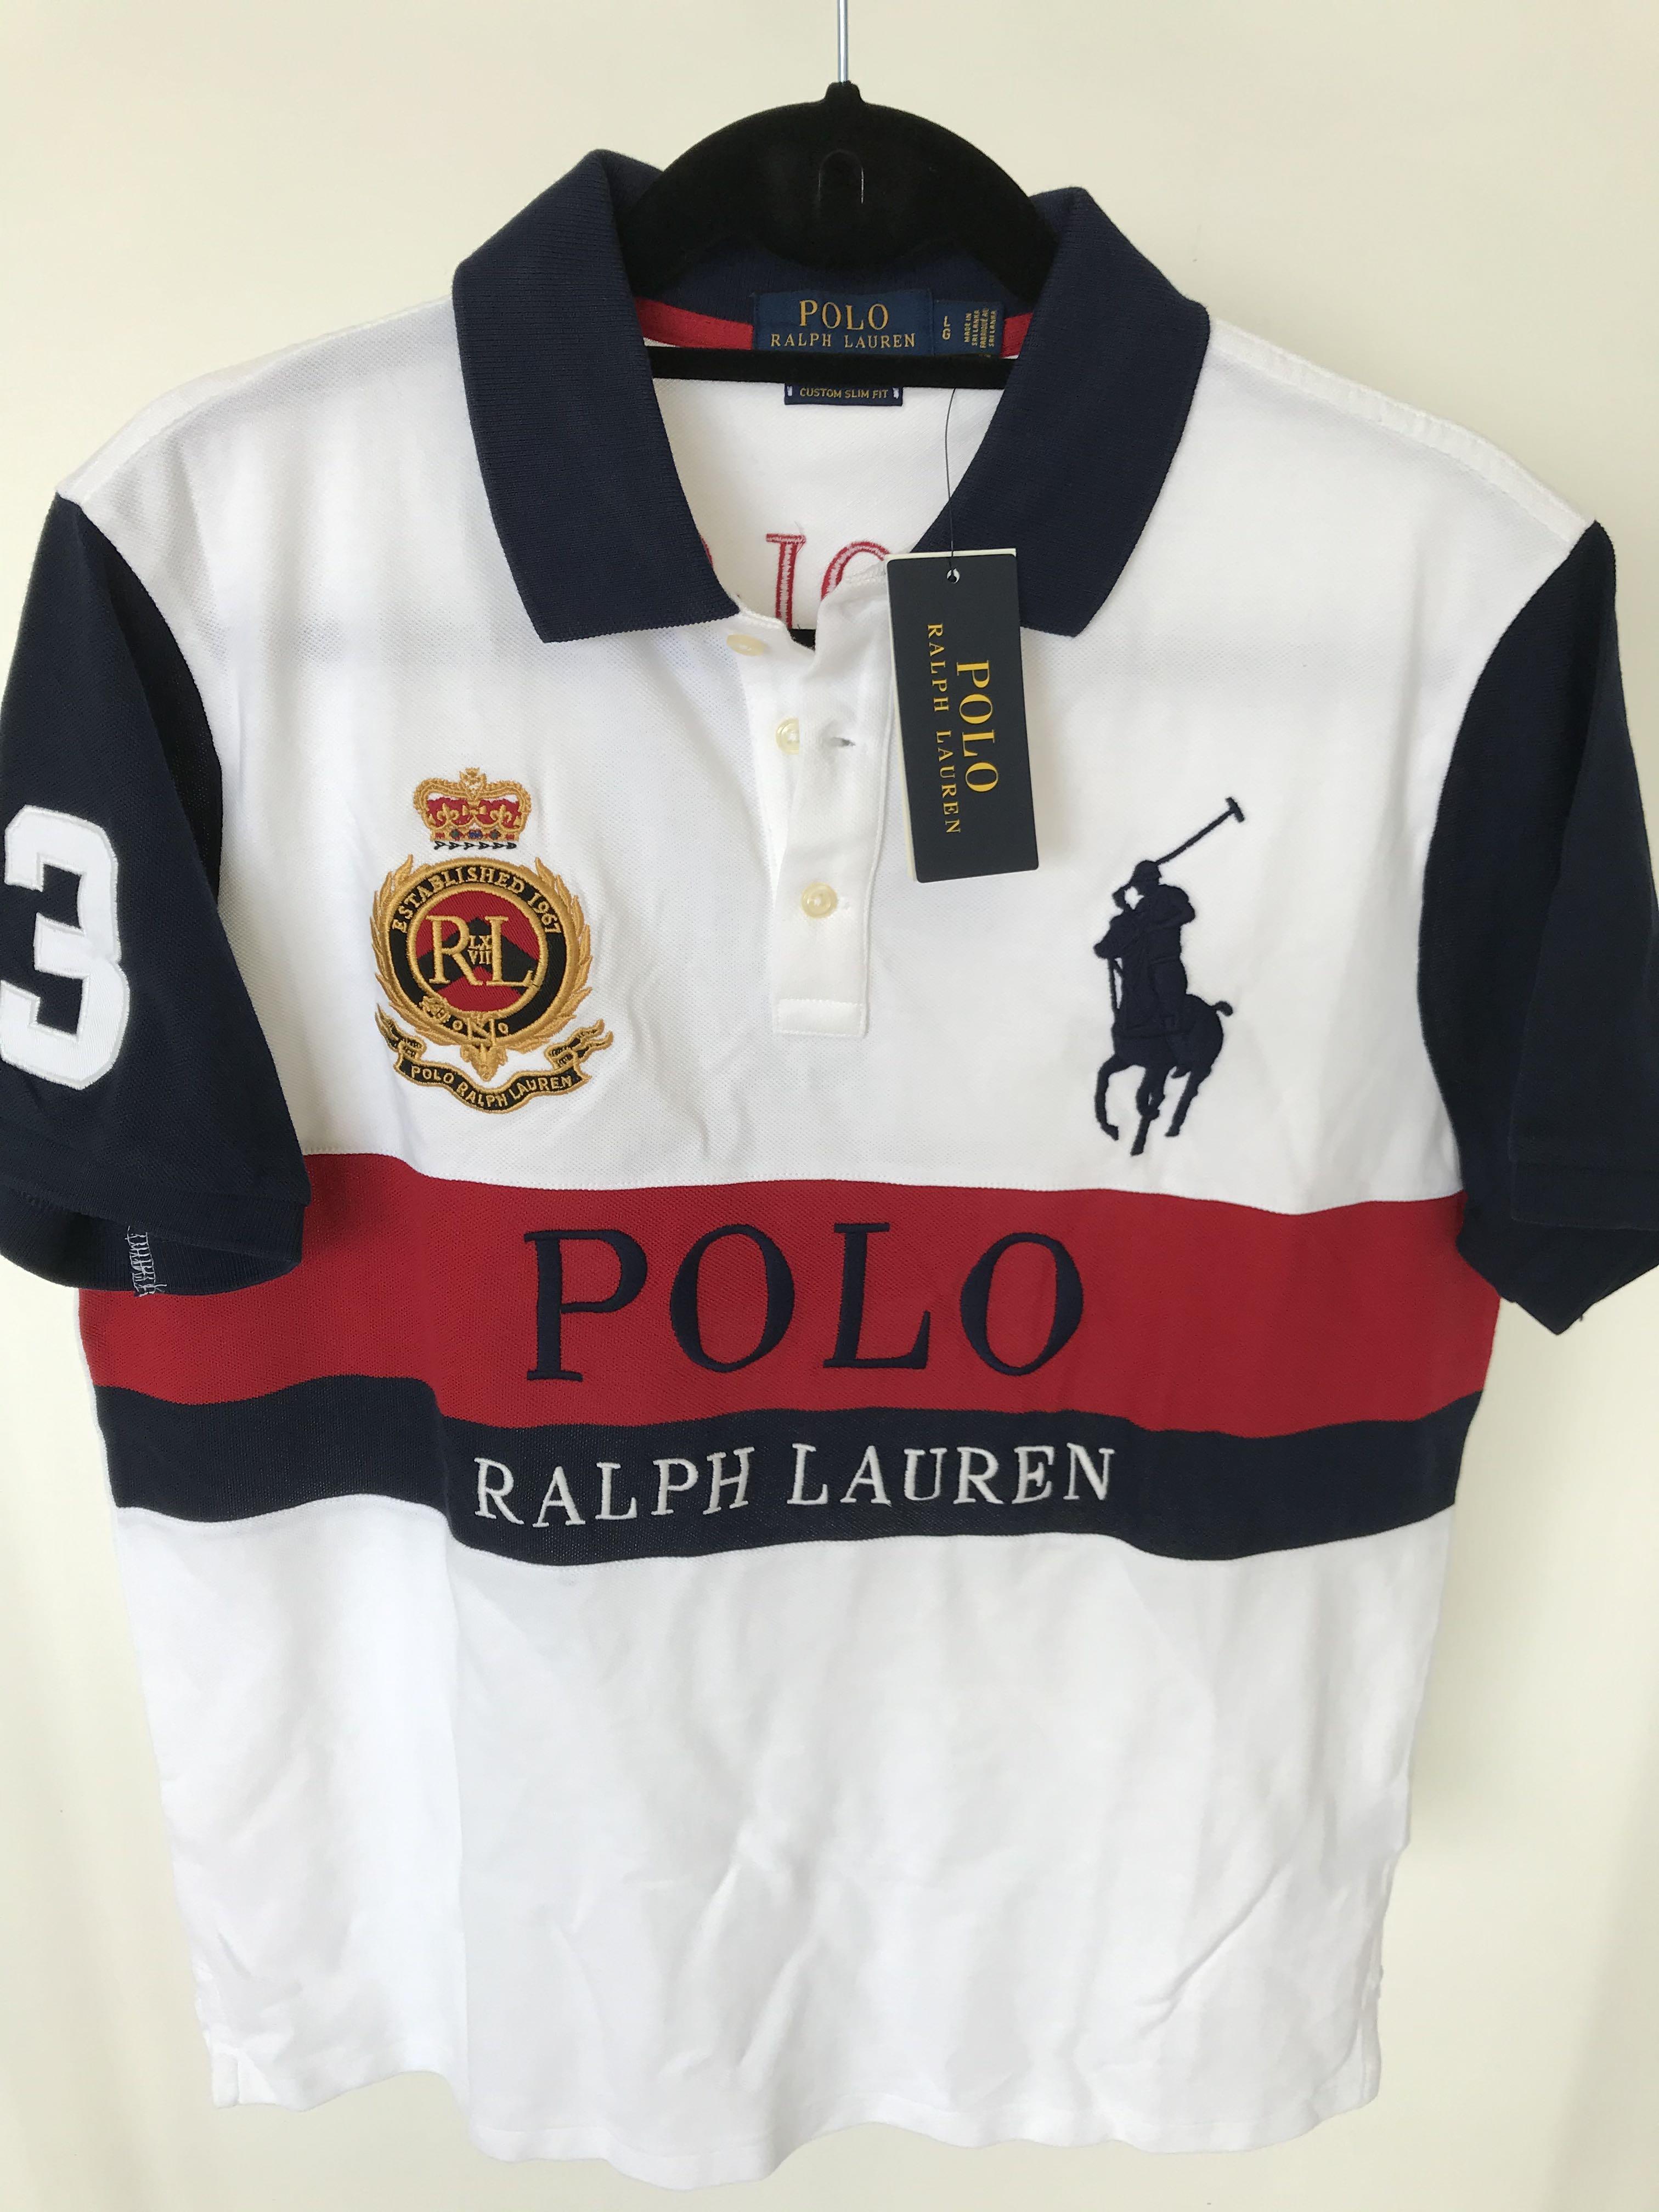 polo ralph lauren shirts malaysia